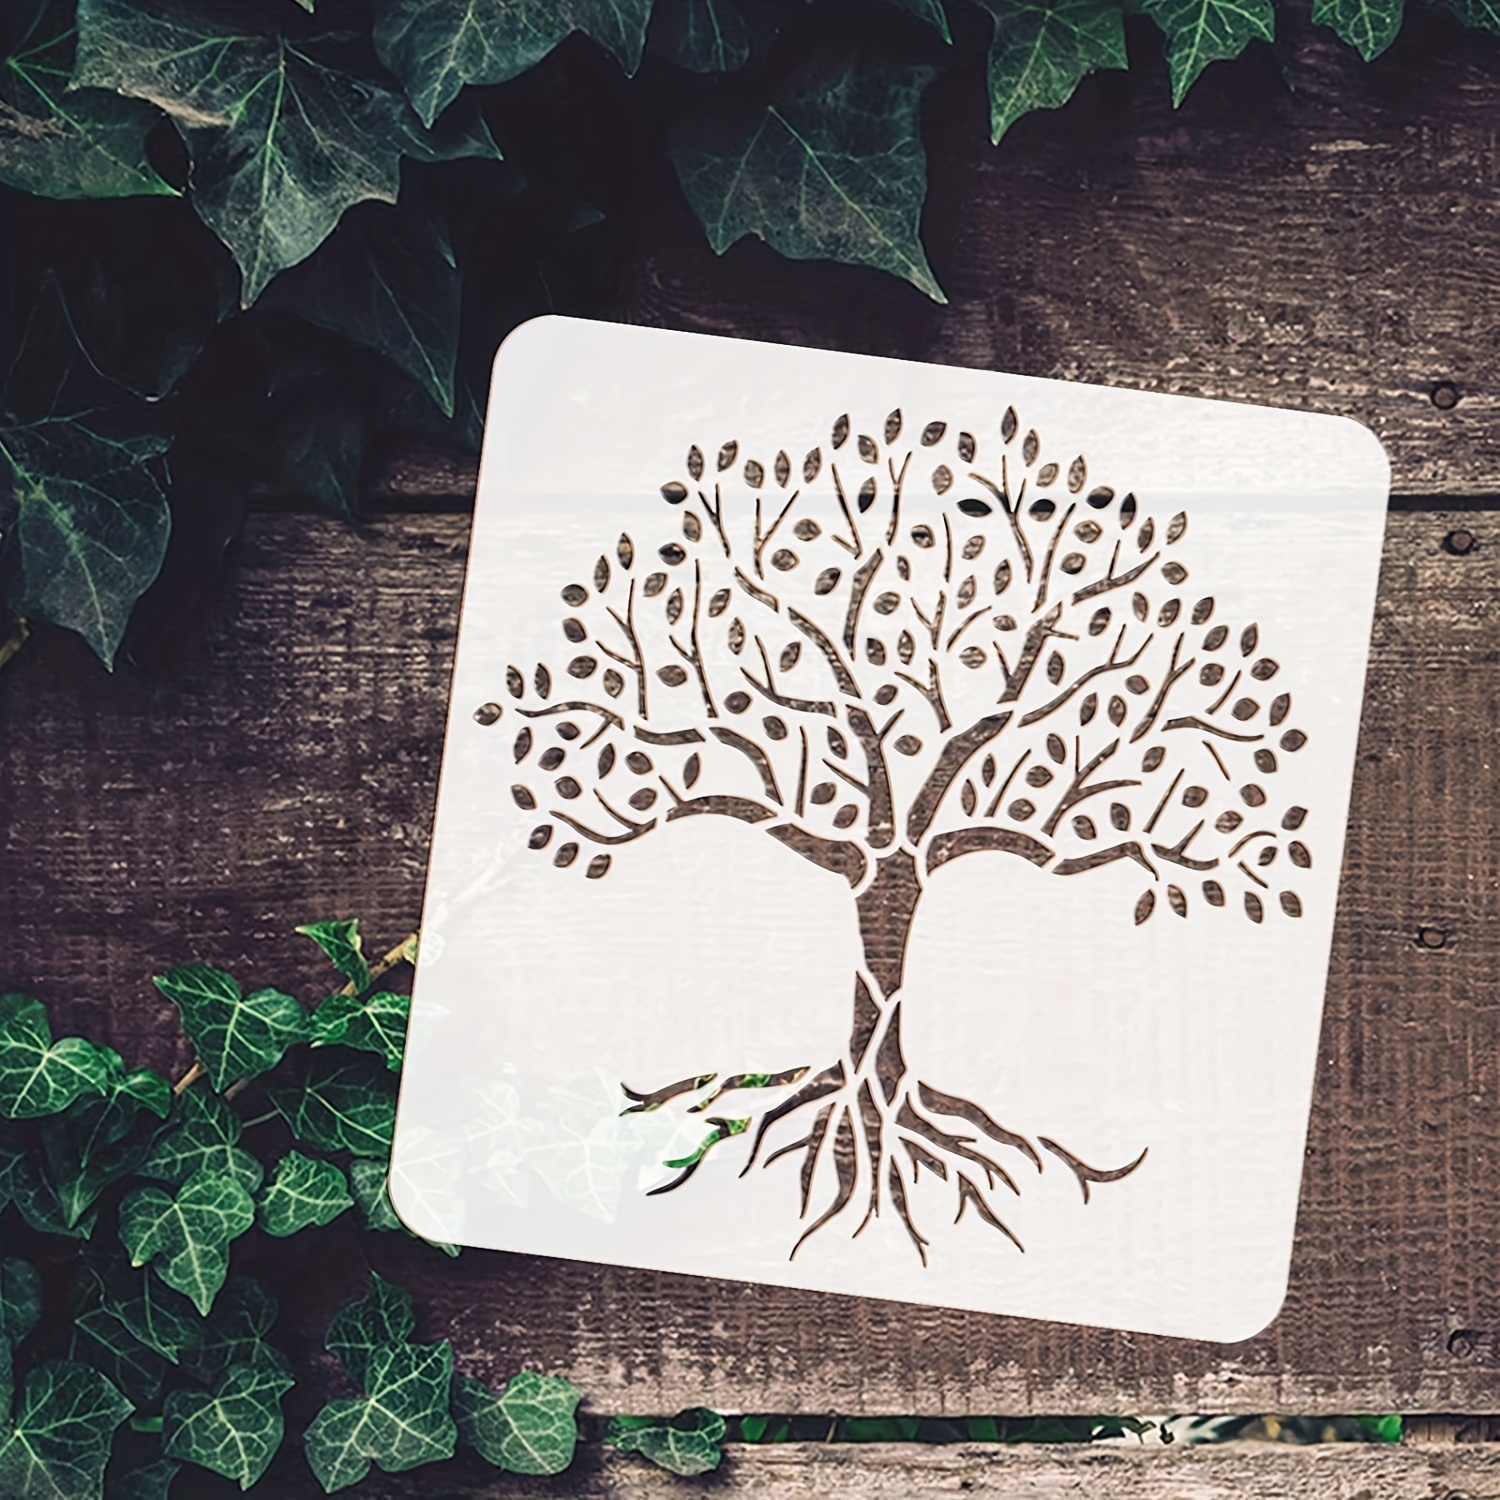 Stencil Plantillas del Árbol de la Vida - Manualidades BadabadocArt